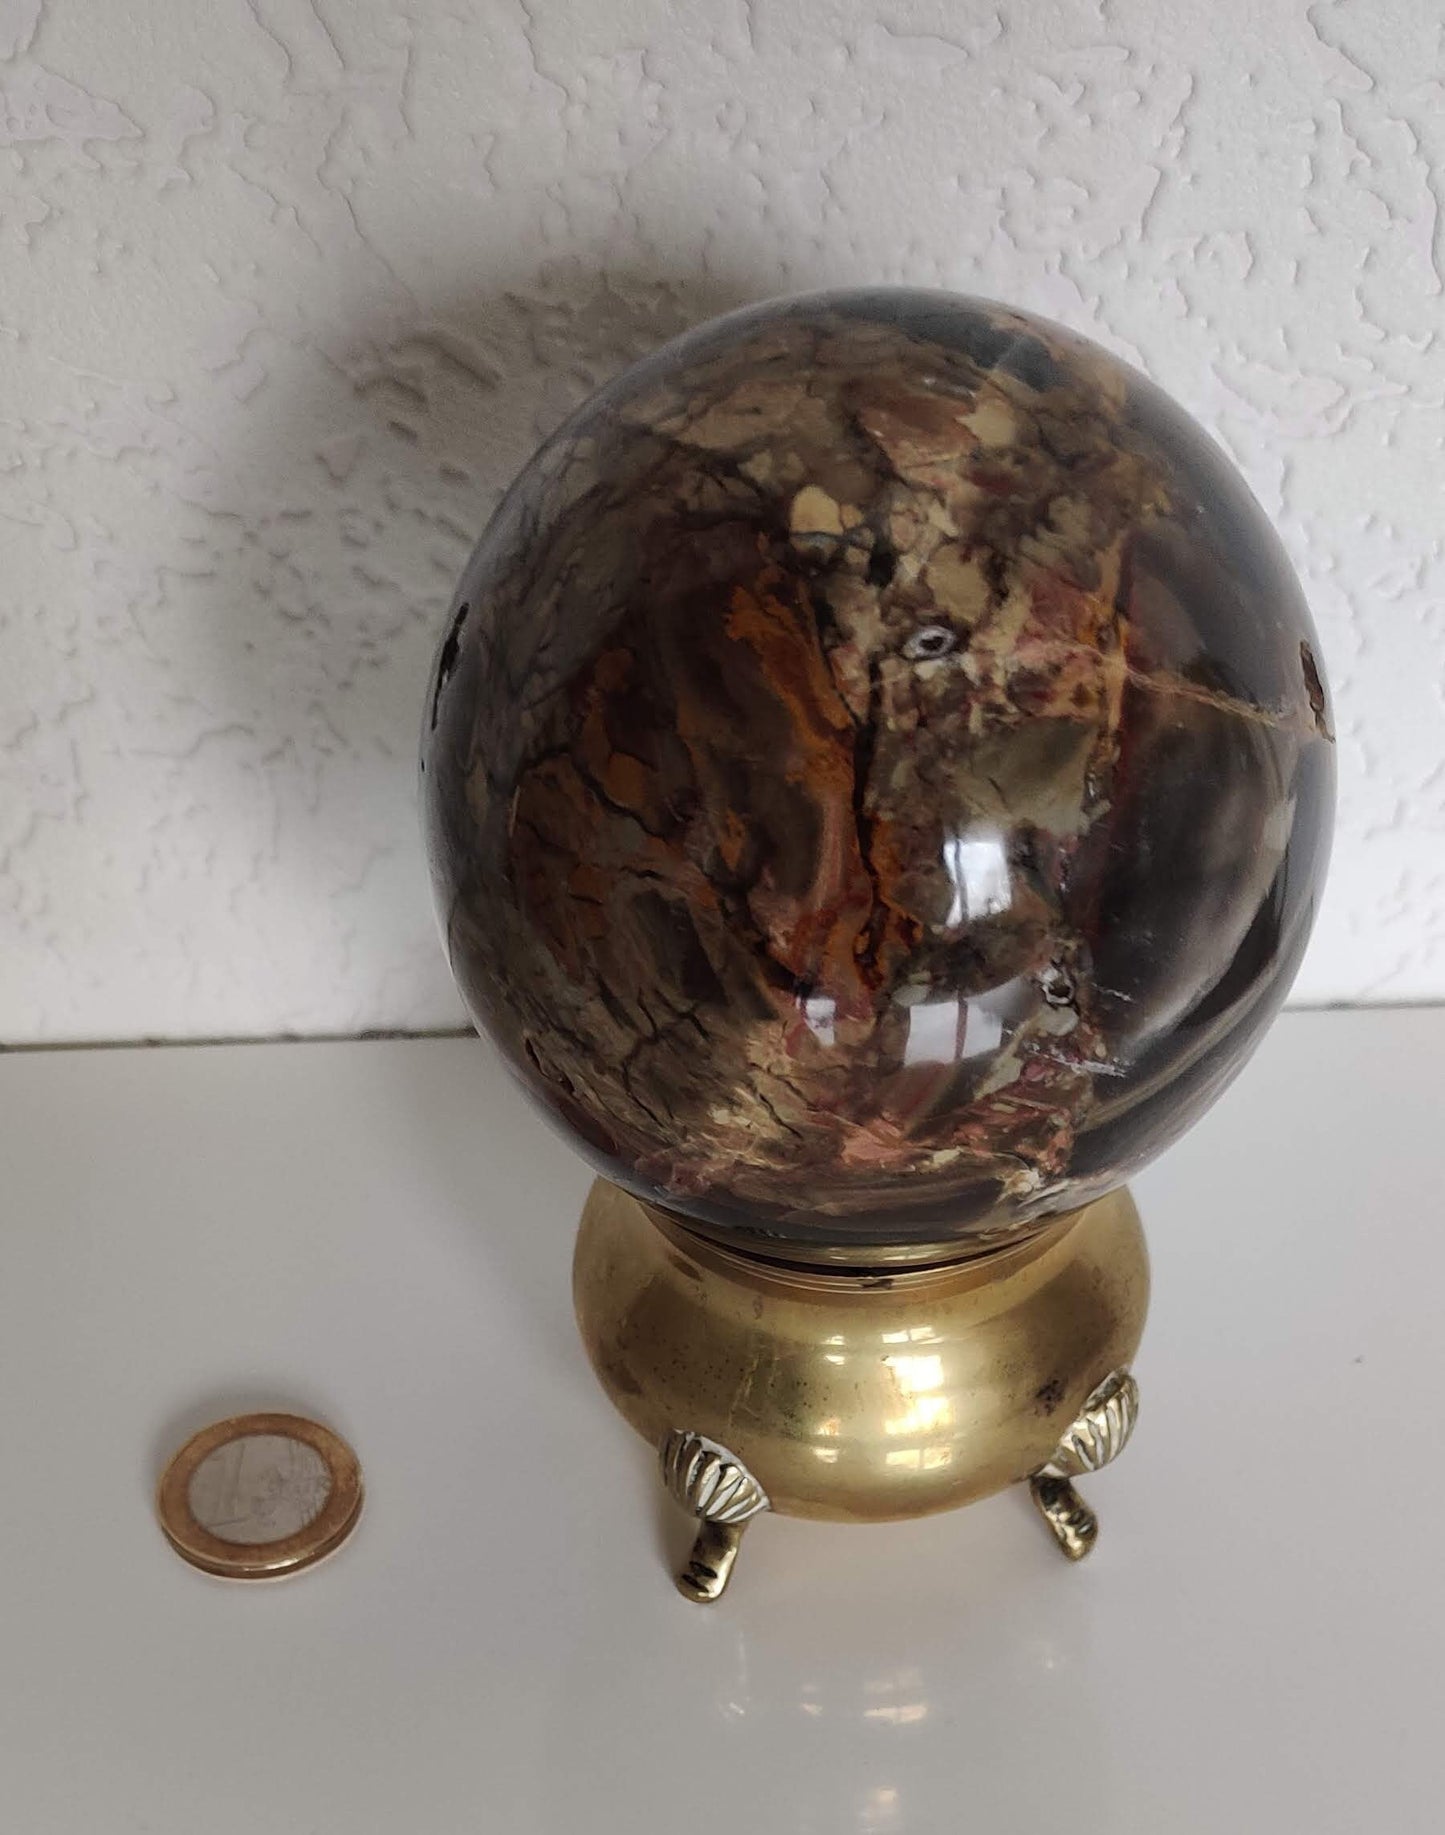 Brazilian Monet Jasper Harmony Sphere - 81mm Diameter - 727 grams - Grounding Crystal, Spiritual Home Decor